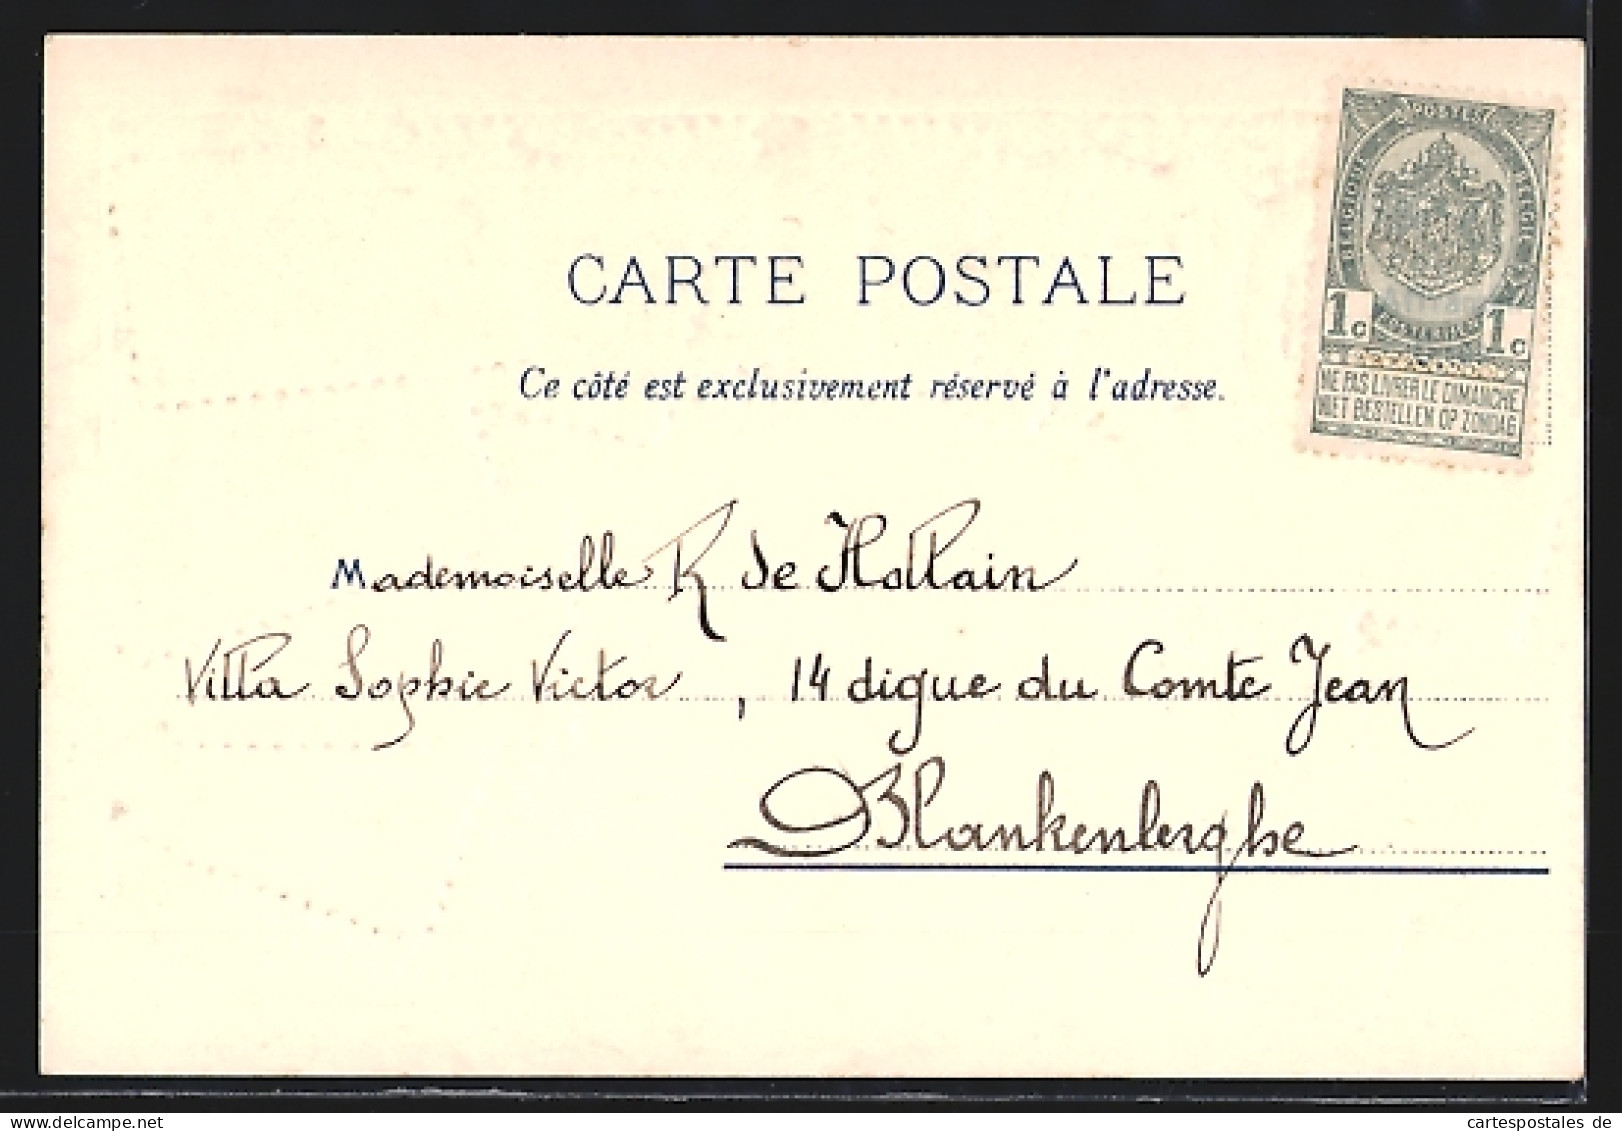 Präge-Lithographie Frankreich, Wappen Und Briefmarken  - Briefmarken (Abbildungen)